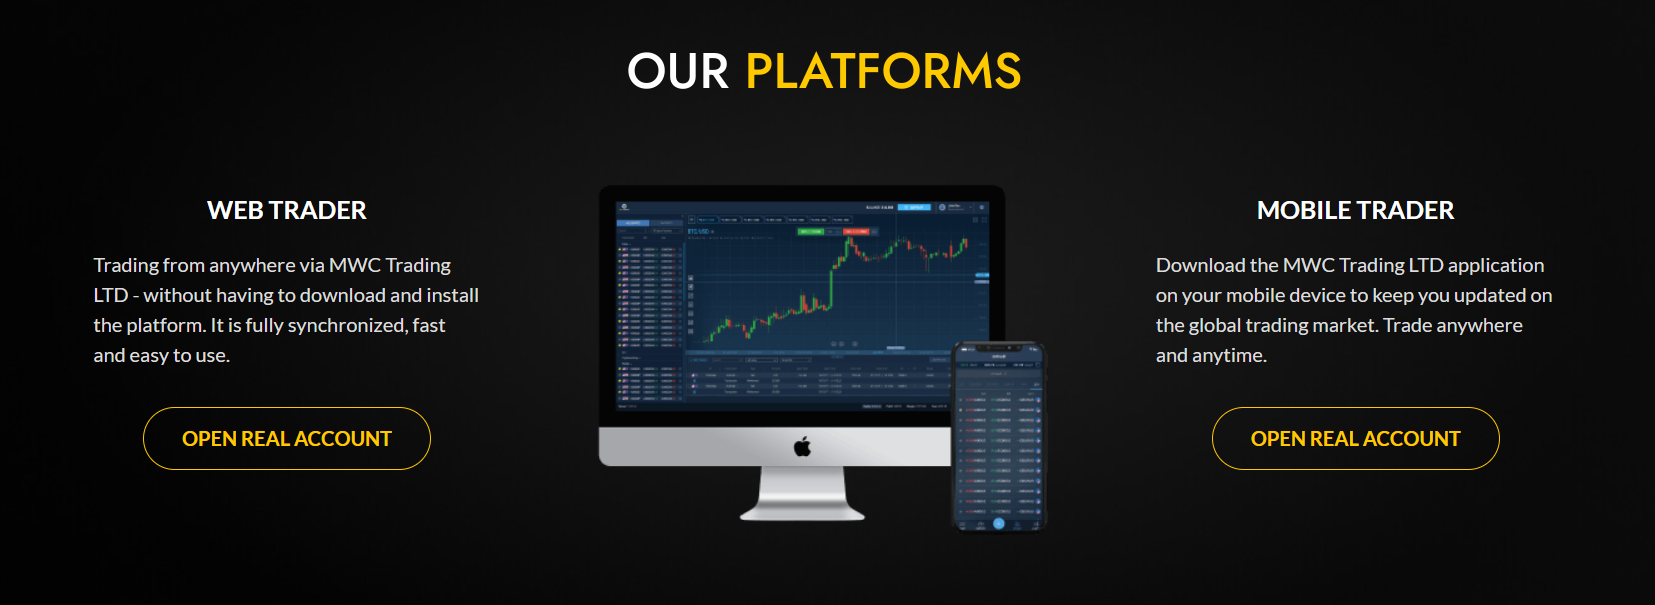 Платформы MWC Trading LTD